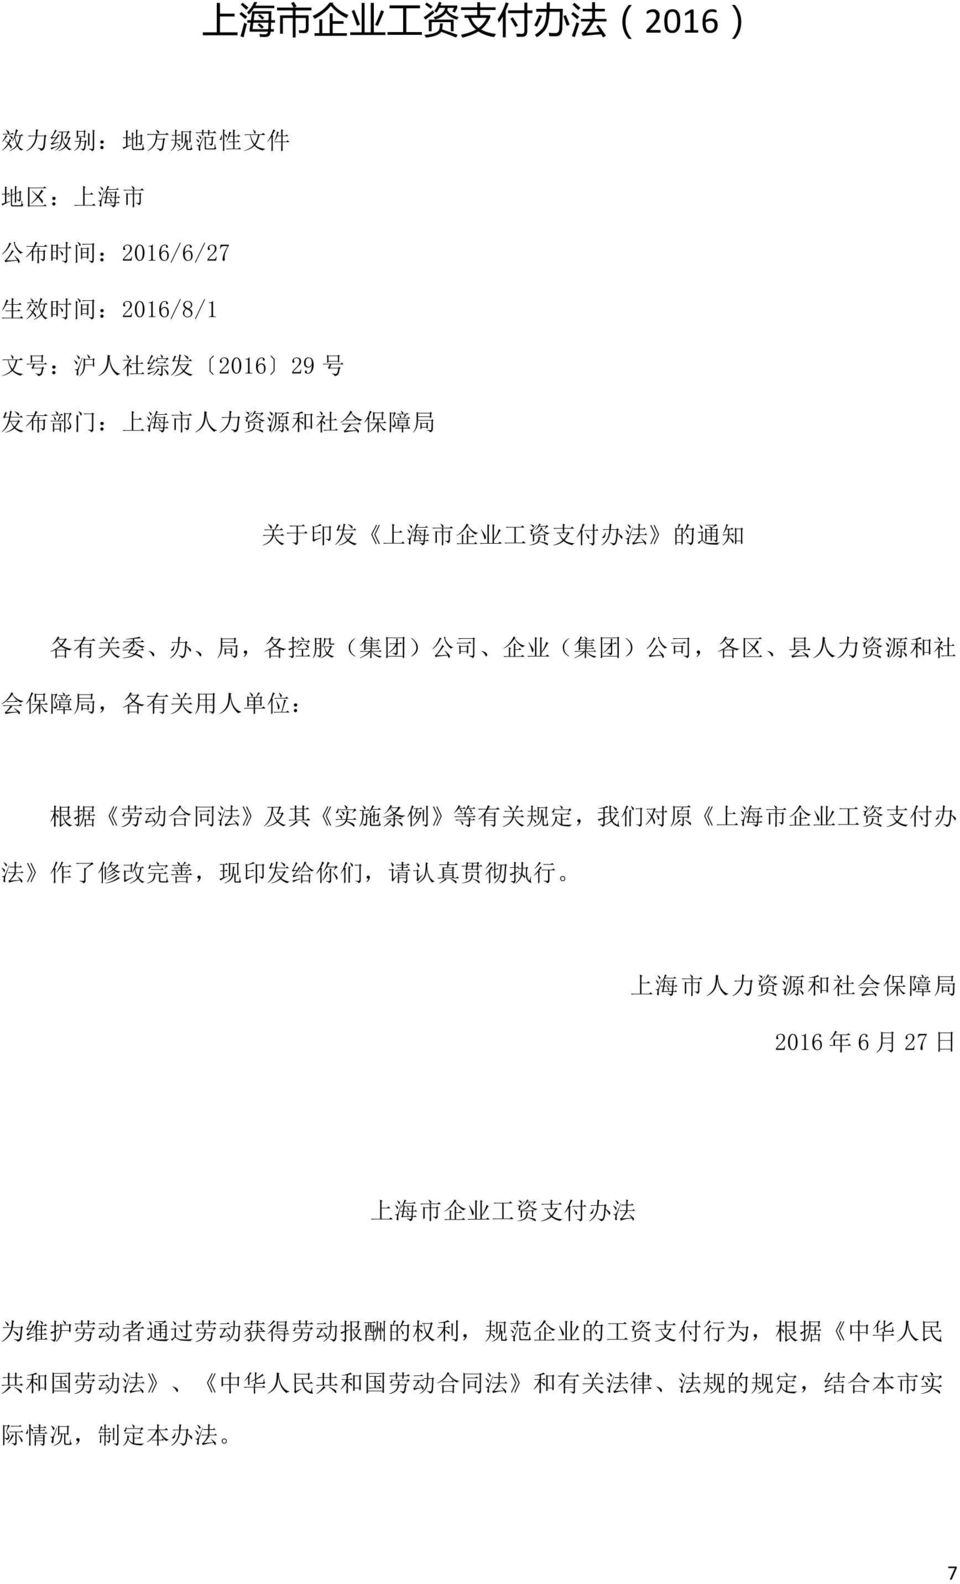 施 条 例 等 有 关 规 定, 我 们 对 原 上 海 市 企 业 工 资 支 付 办 法 作 了 修 改 完 善, 现 印 发 给 你 们, 请 认 真 贯 彻 执 行 上 海 市 人 力 资 源 和 社 会 保 障 局 2016 年 6 月 27 日 上 海 市 企 业 工 资 支 付 办 法 为 维